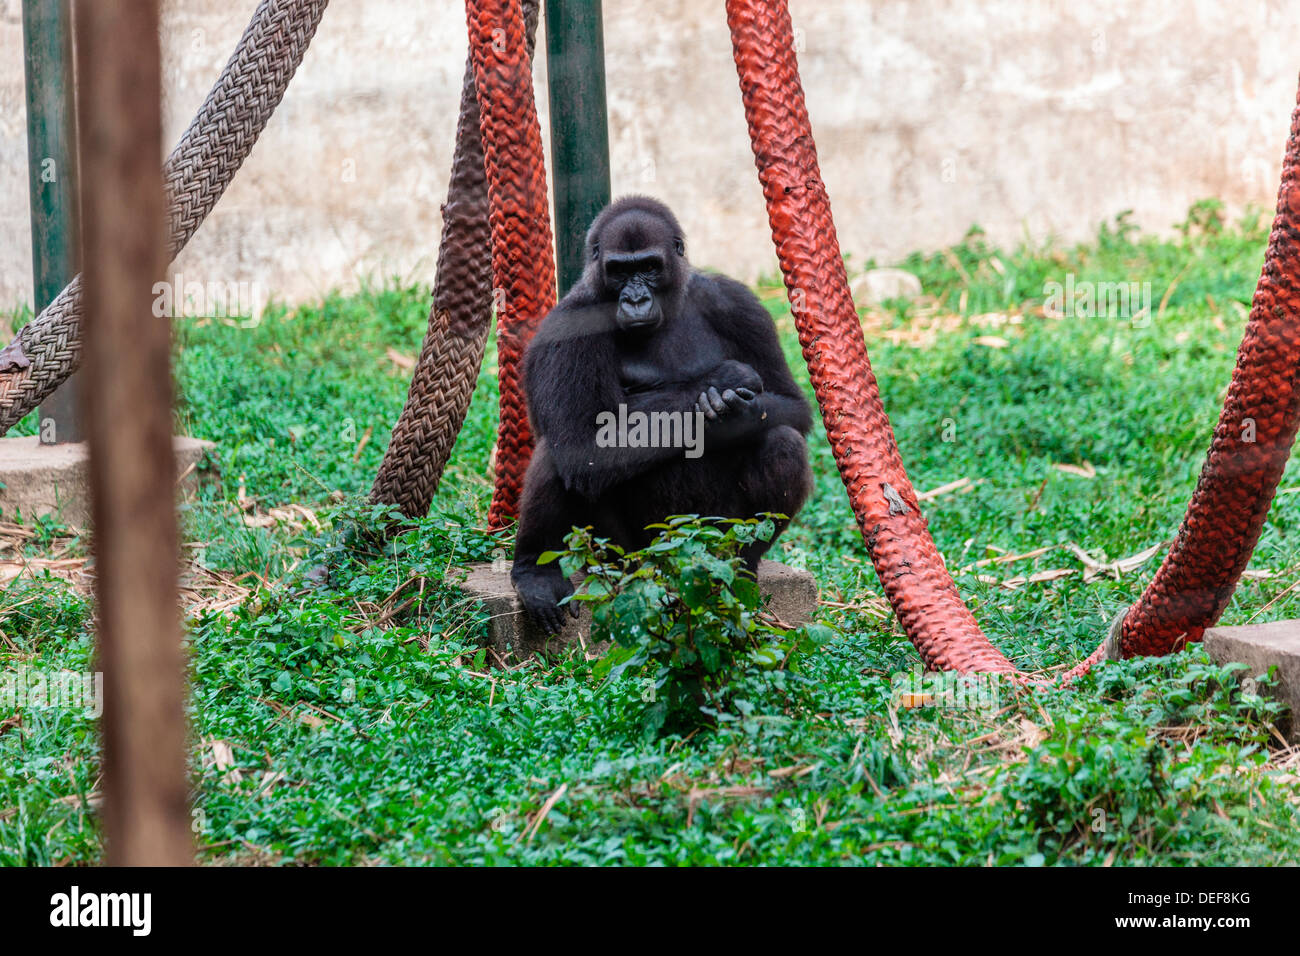 L'Afrique, Cameroun, Limbe. Gorilla à Limbe Wildlife Centre. Banque D'Images